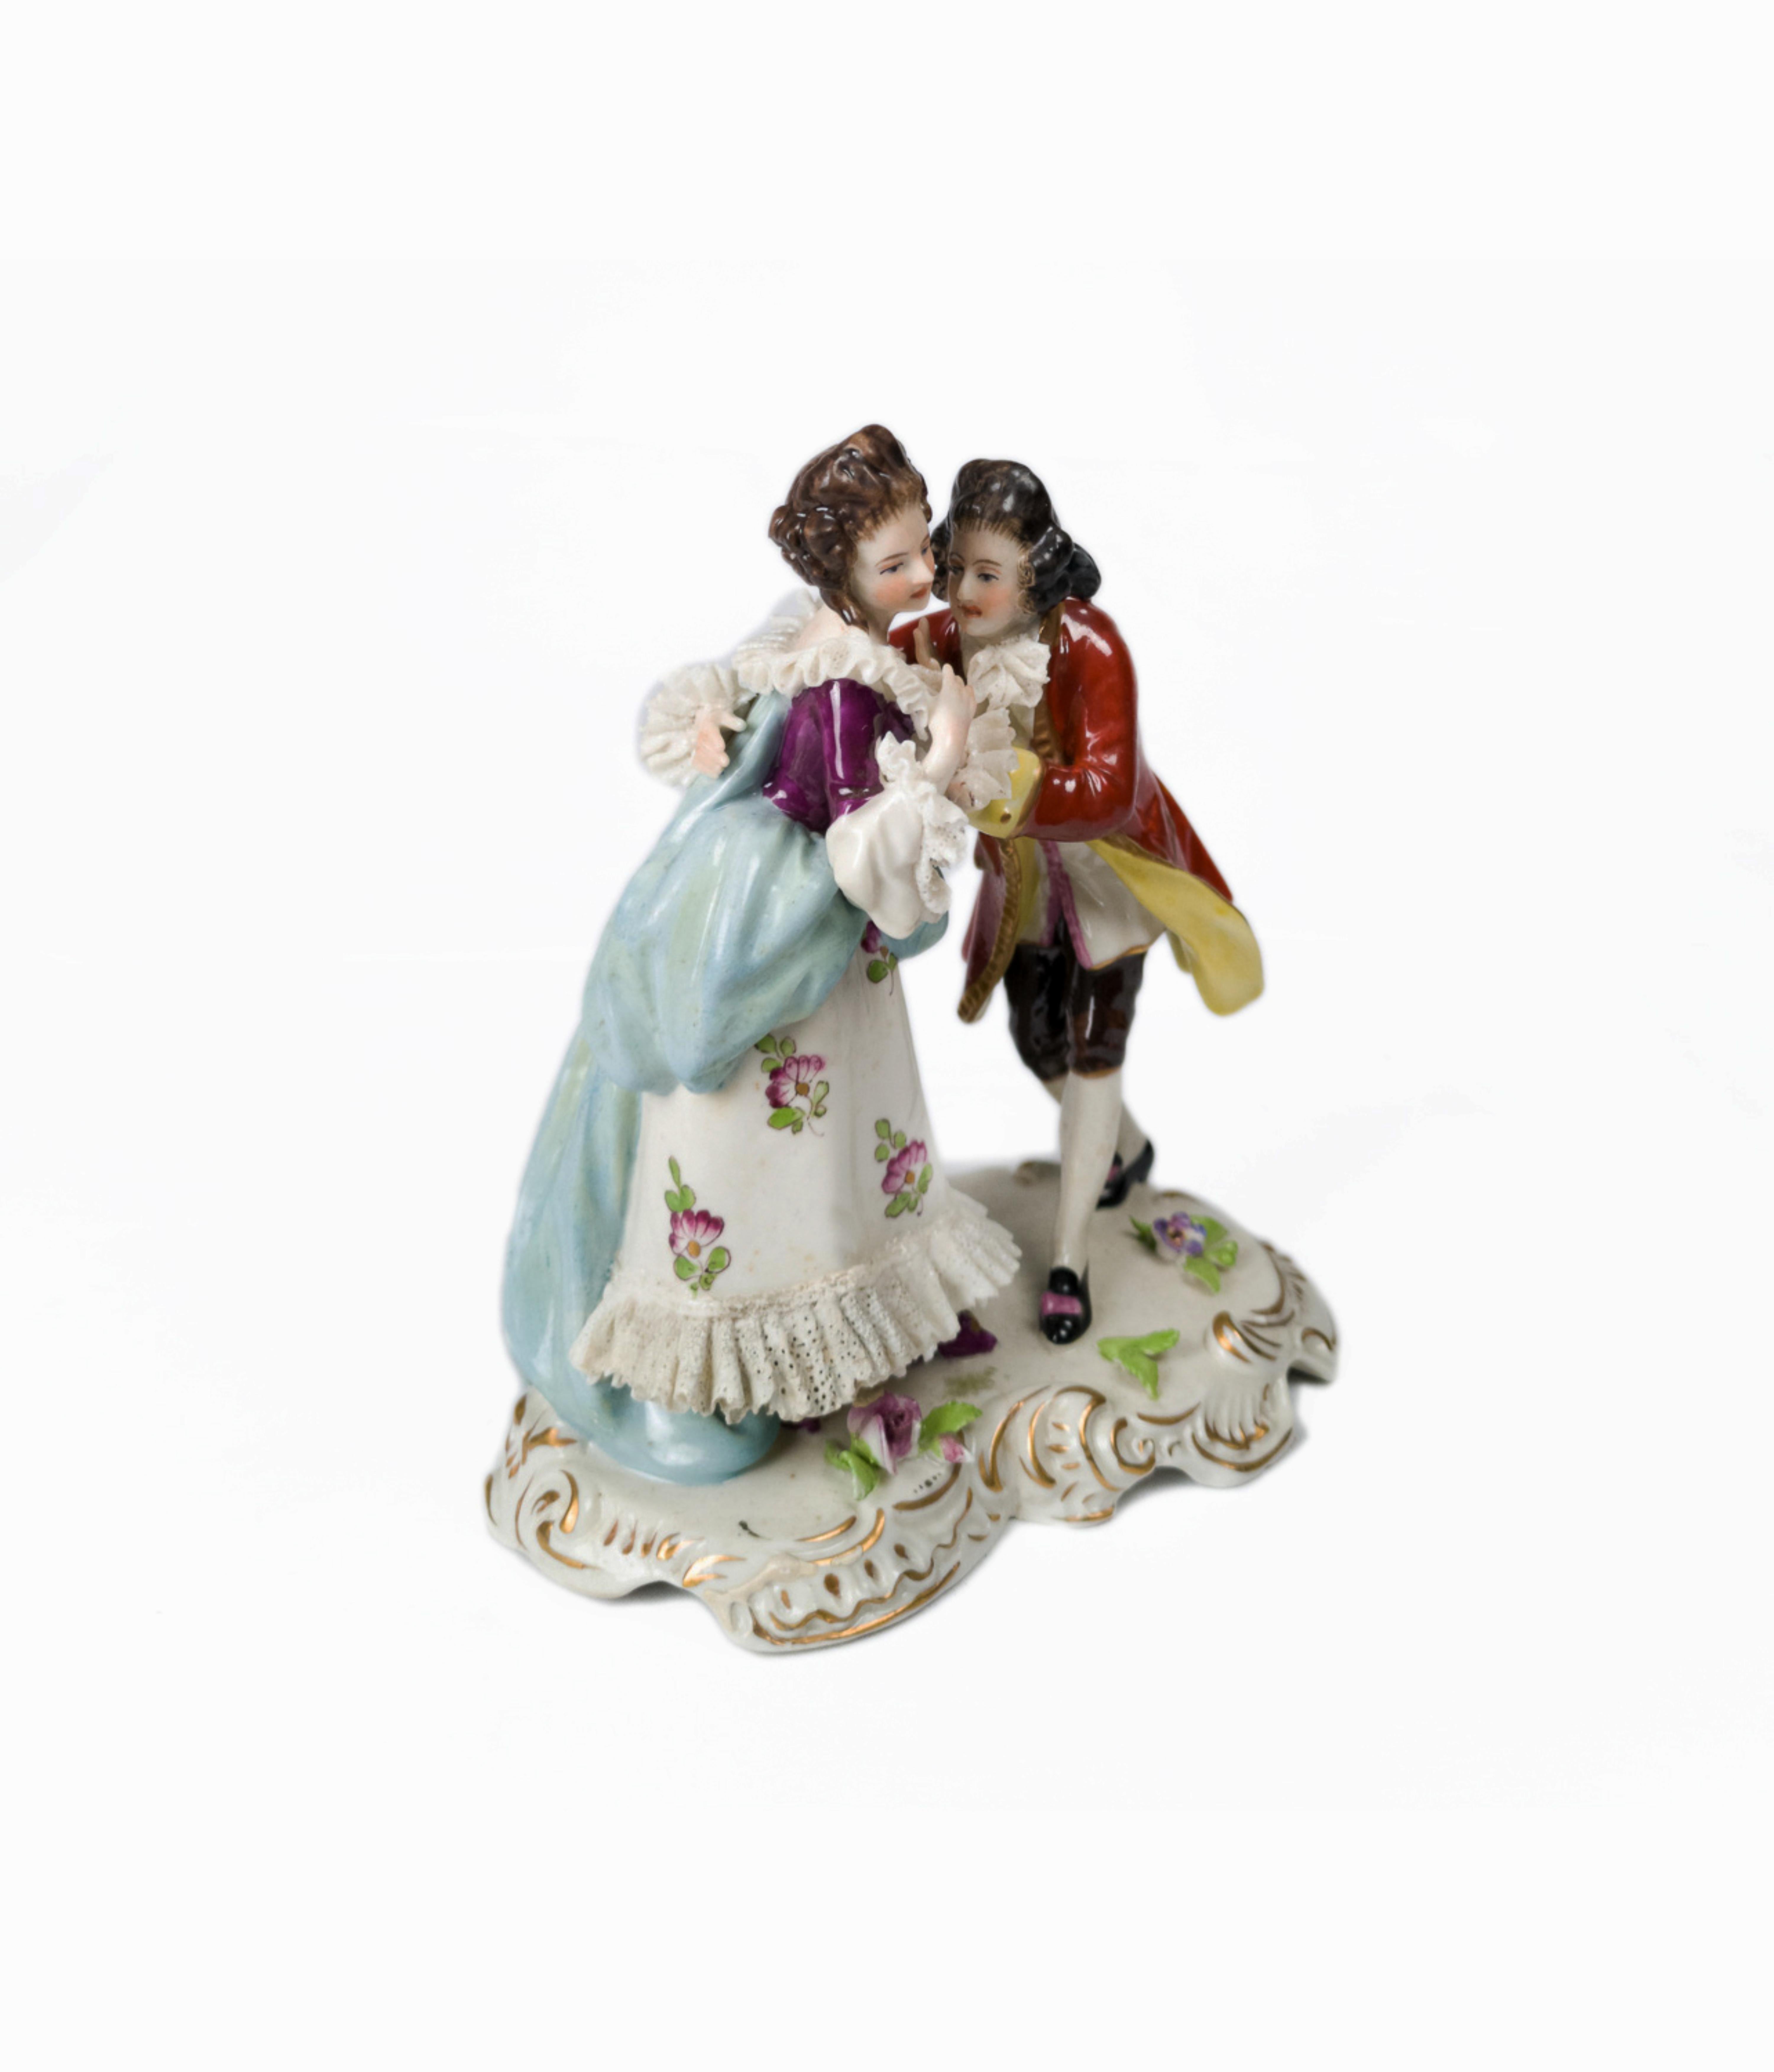 Porzellanfigur eines sich küssenden Paares, ein sehr feines, weiches Stück aus Volkstedt mit einer Marke auf dem Sockel und dem Gründungsdatum 